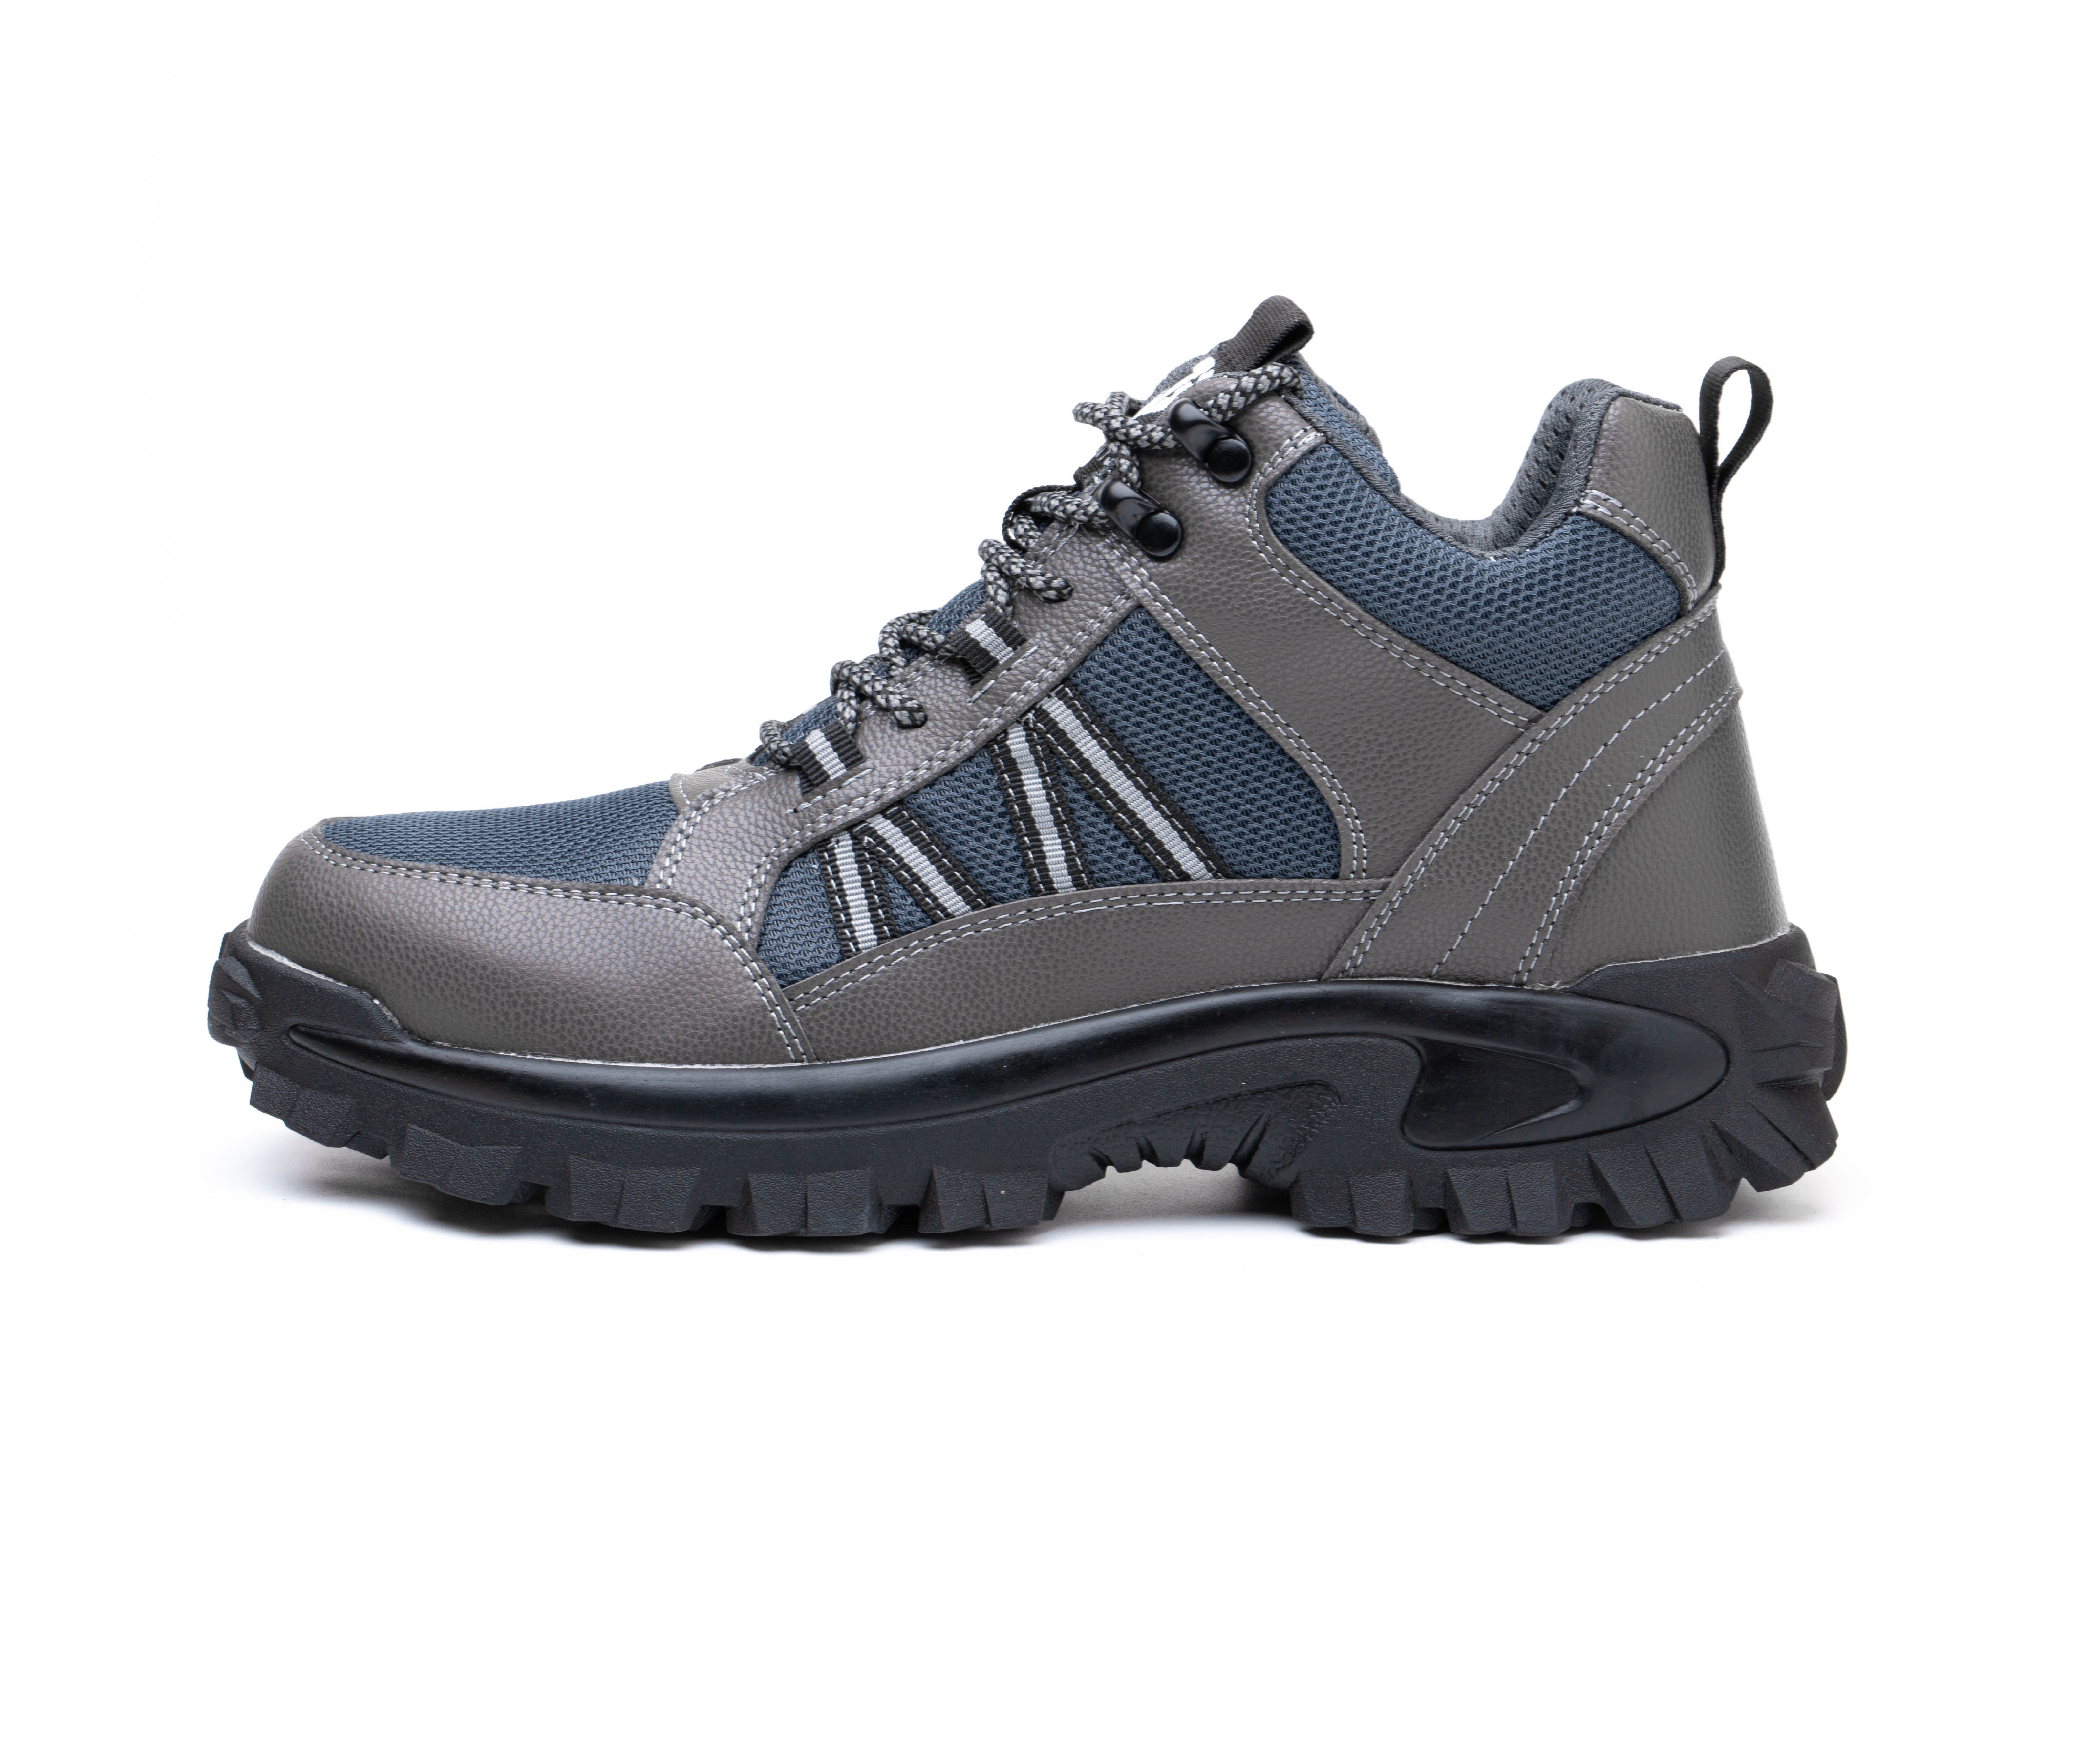 Men's Steel Toe Safety Boots - Model 665 SafeAlex.com